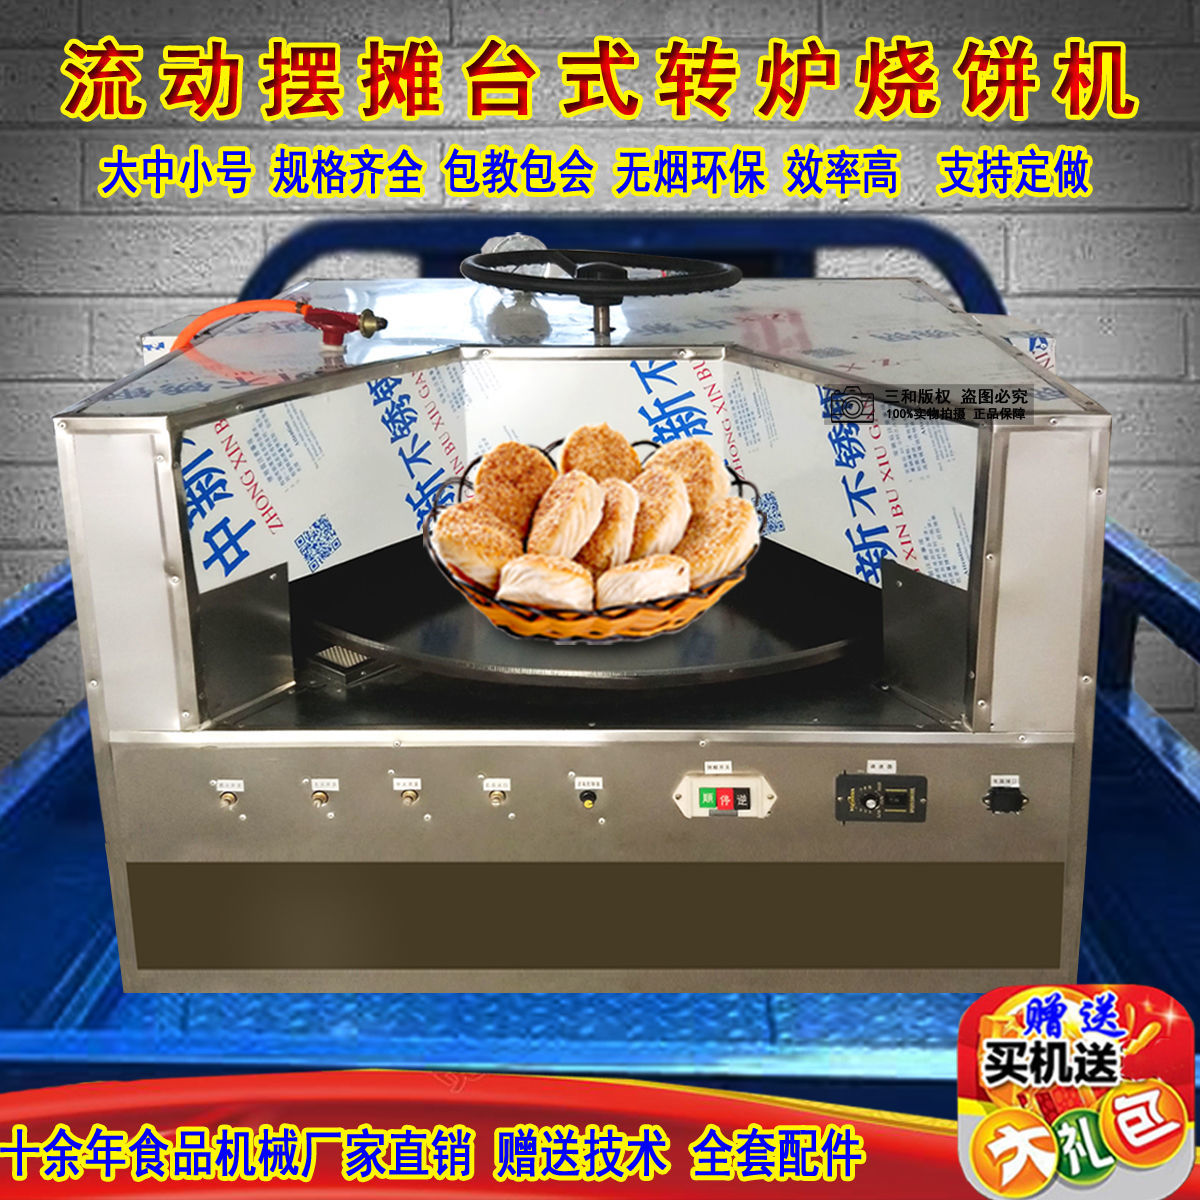 通康新款全自动烤饼机商用燃气型烧饼炉子流动摆摊两用式烧饼机器